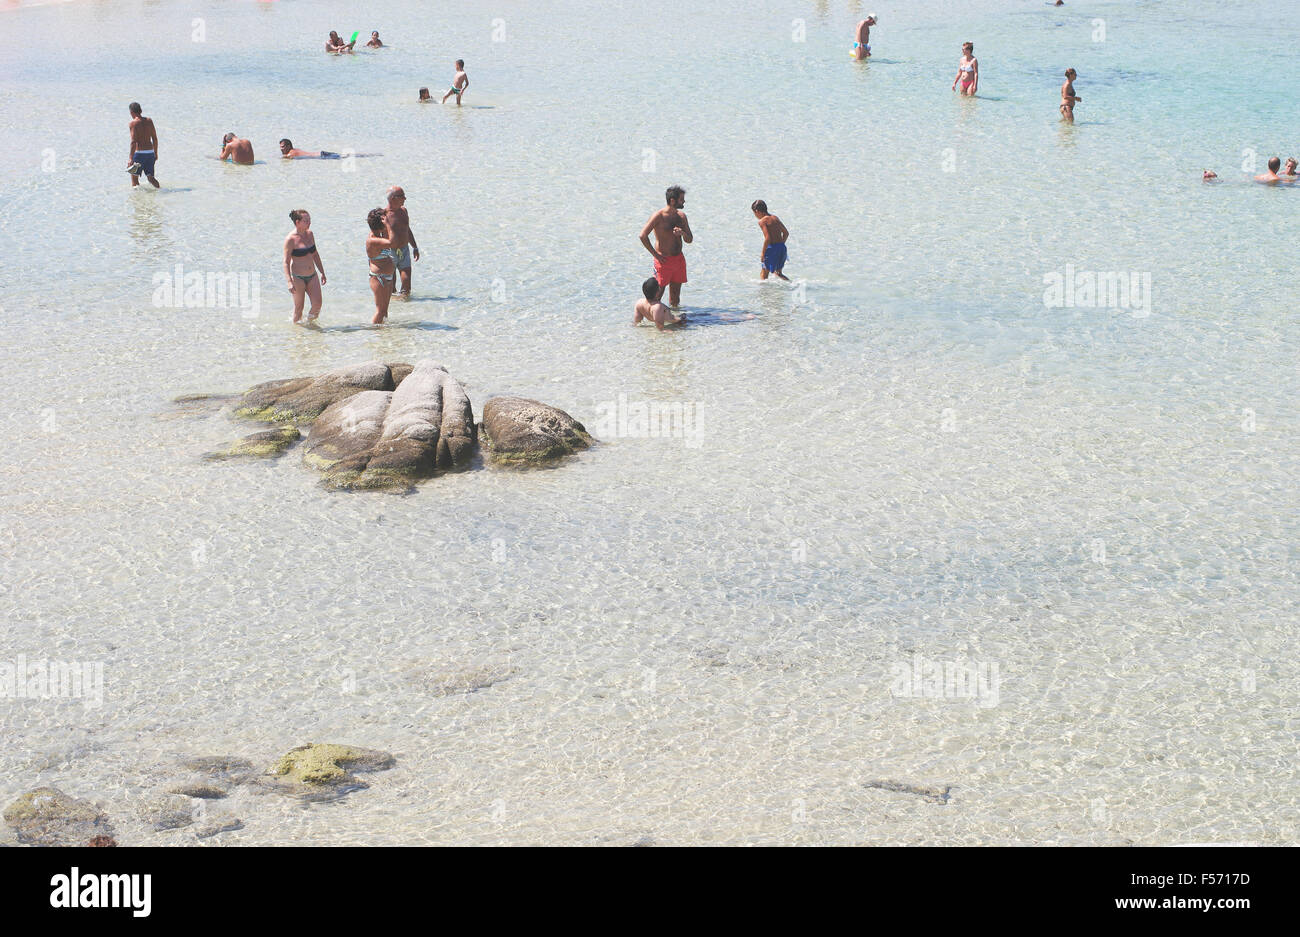 Costa Rei, Italia - 25 agosto: persone non identificate in spiaggia chiamata scoglio di Peppino. Giornata di sole in estate, acqua cristallina lik Foto Stock